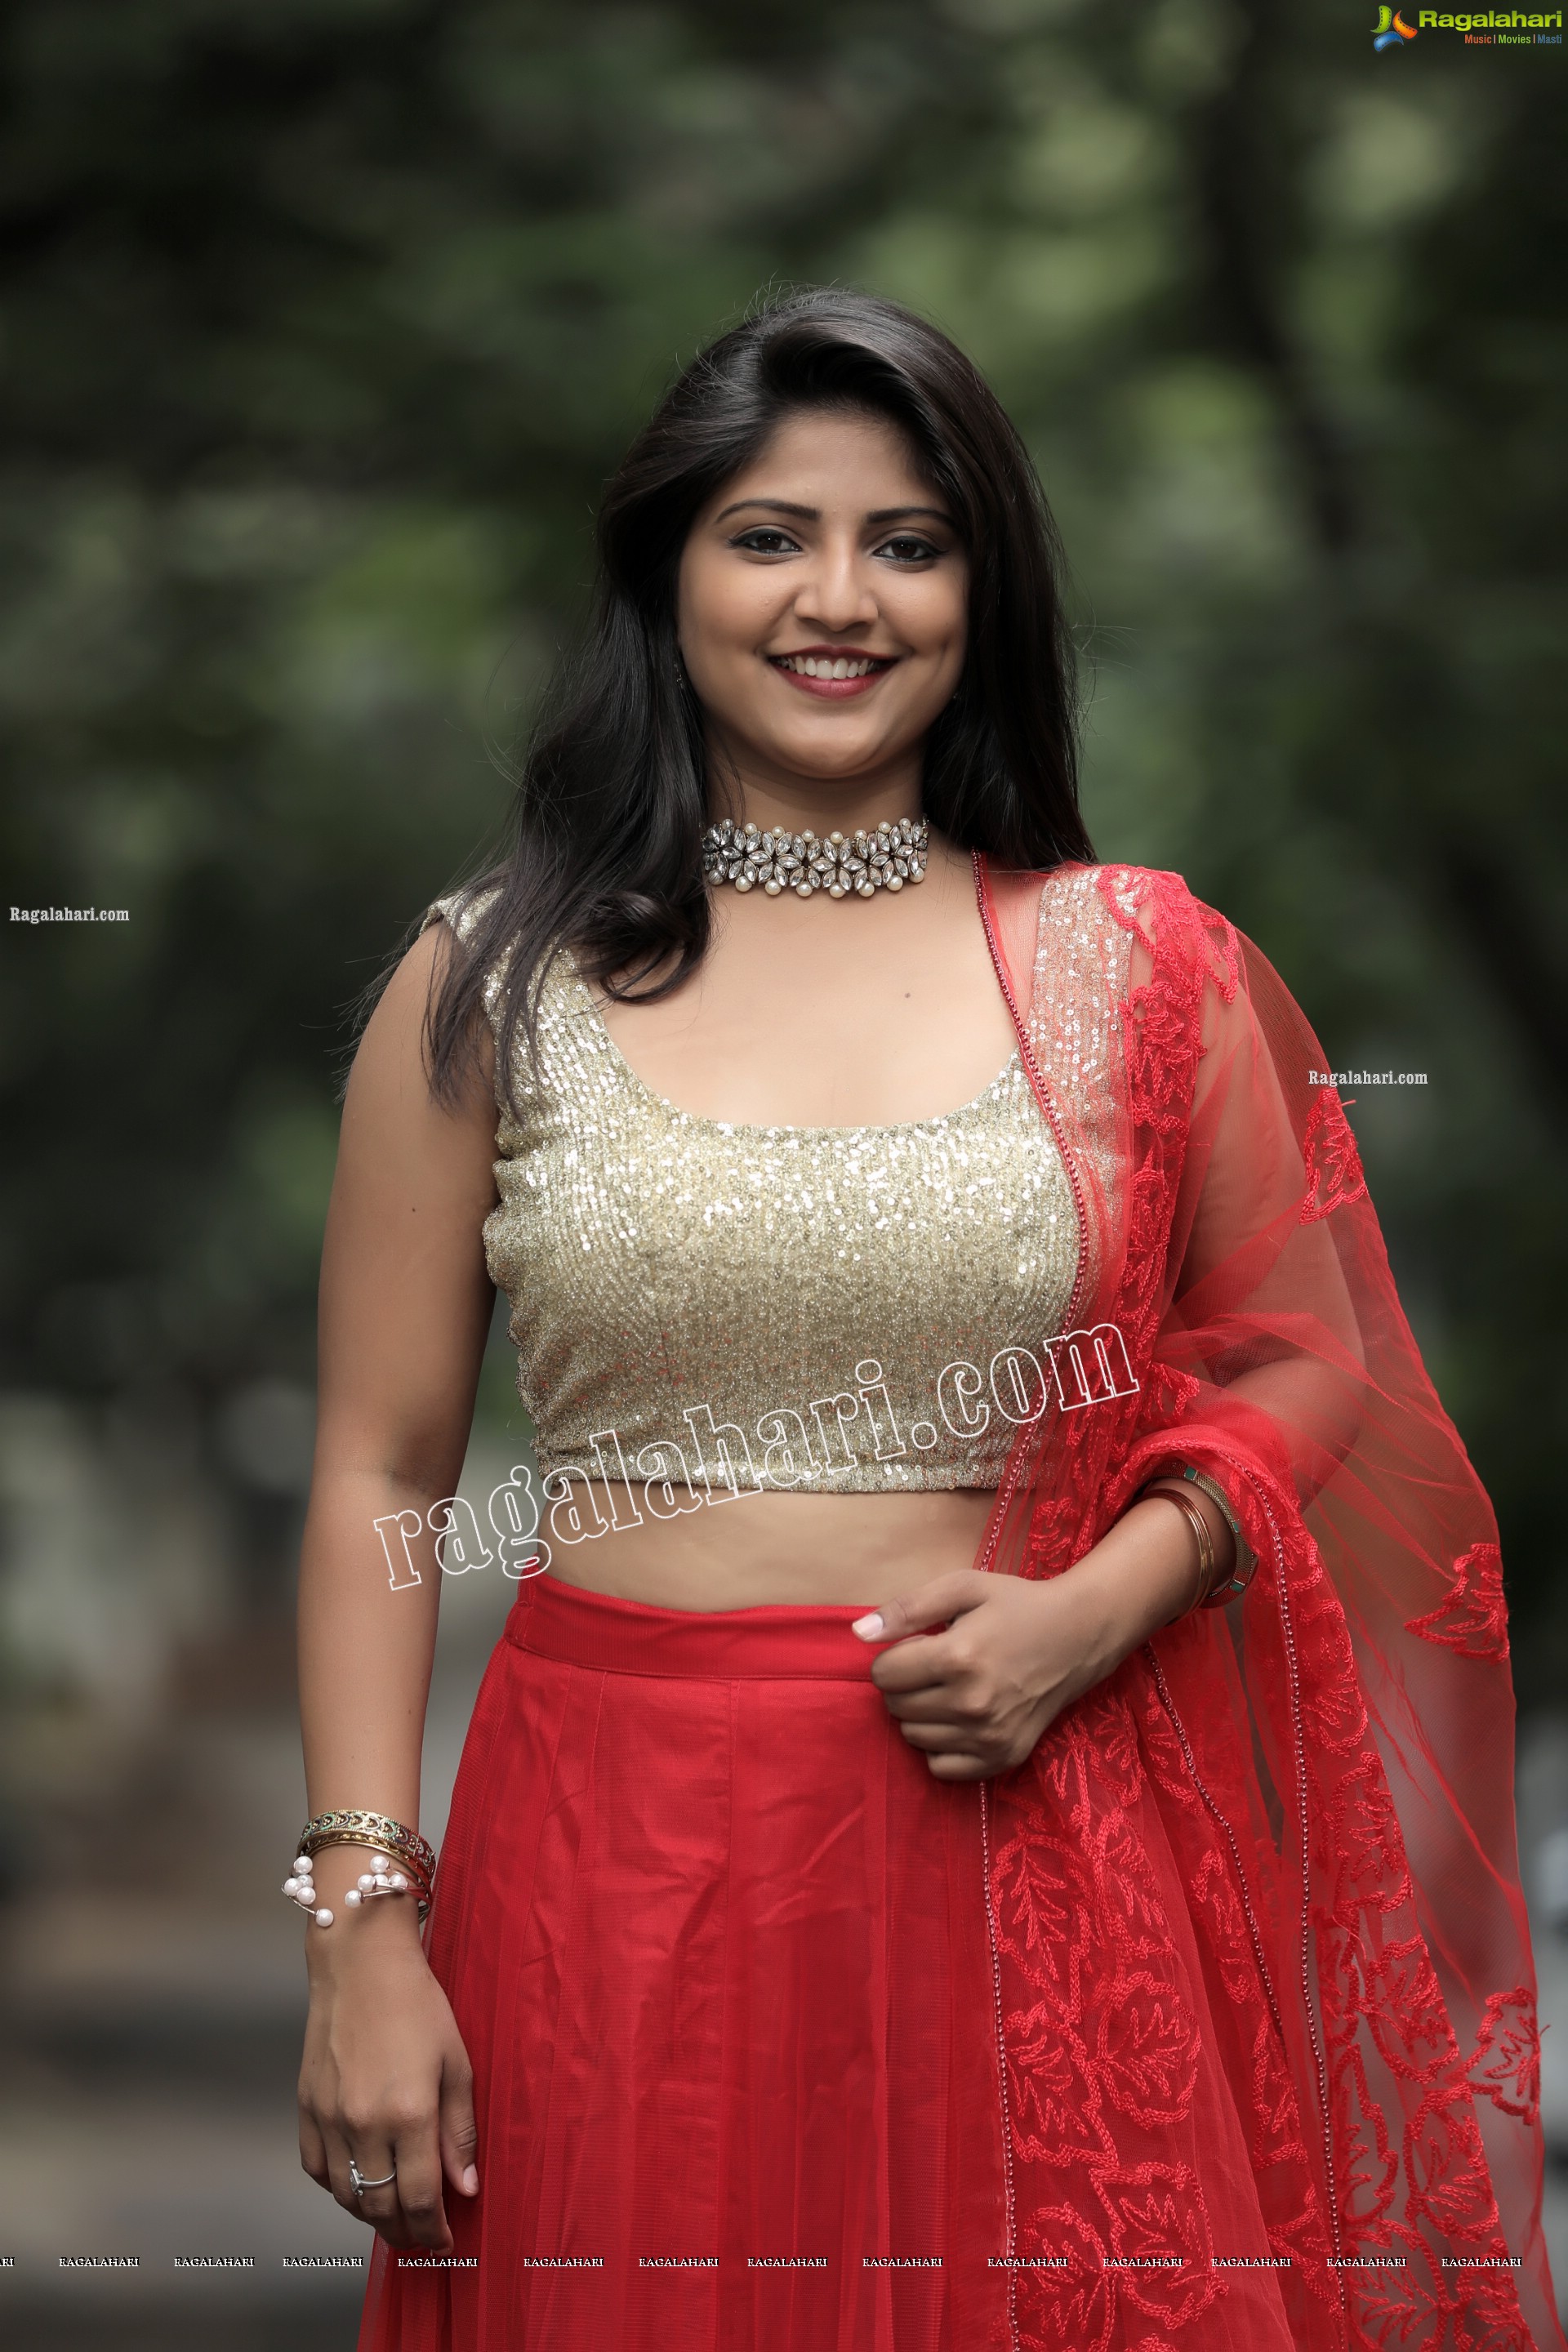 Shabeena Shaik in Red Embellished Lehenga Exclusive Photo Shoot